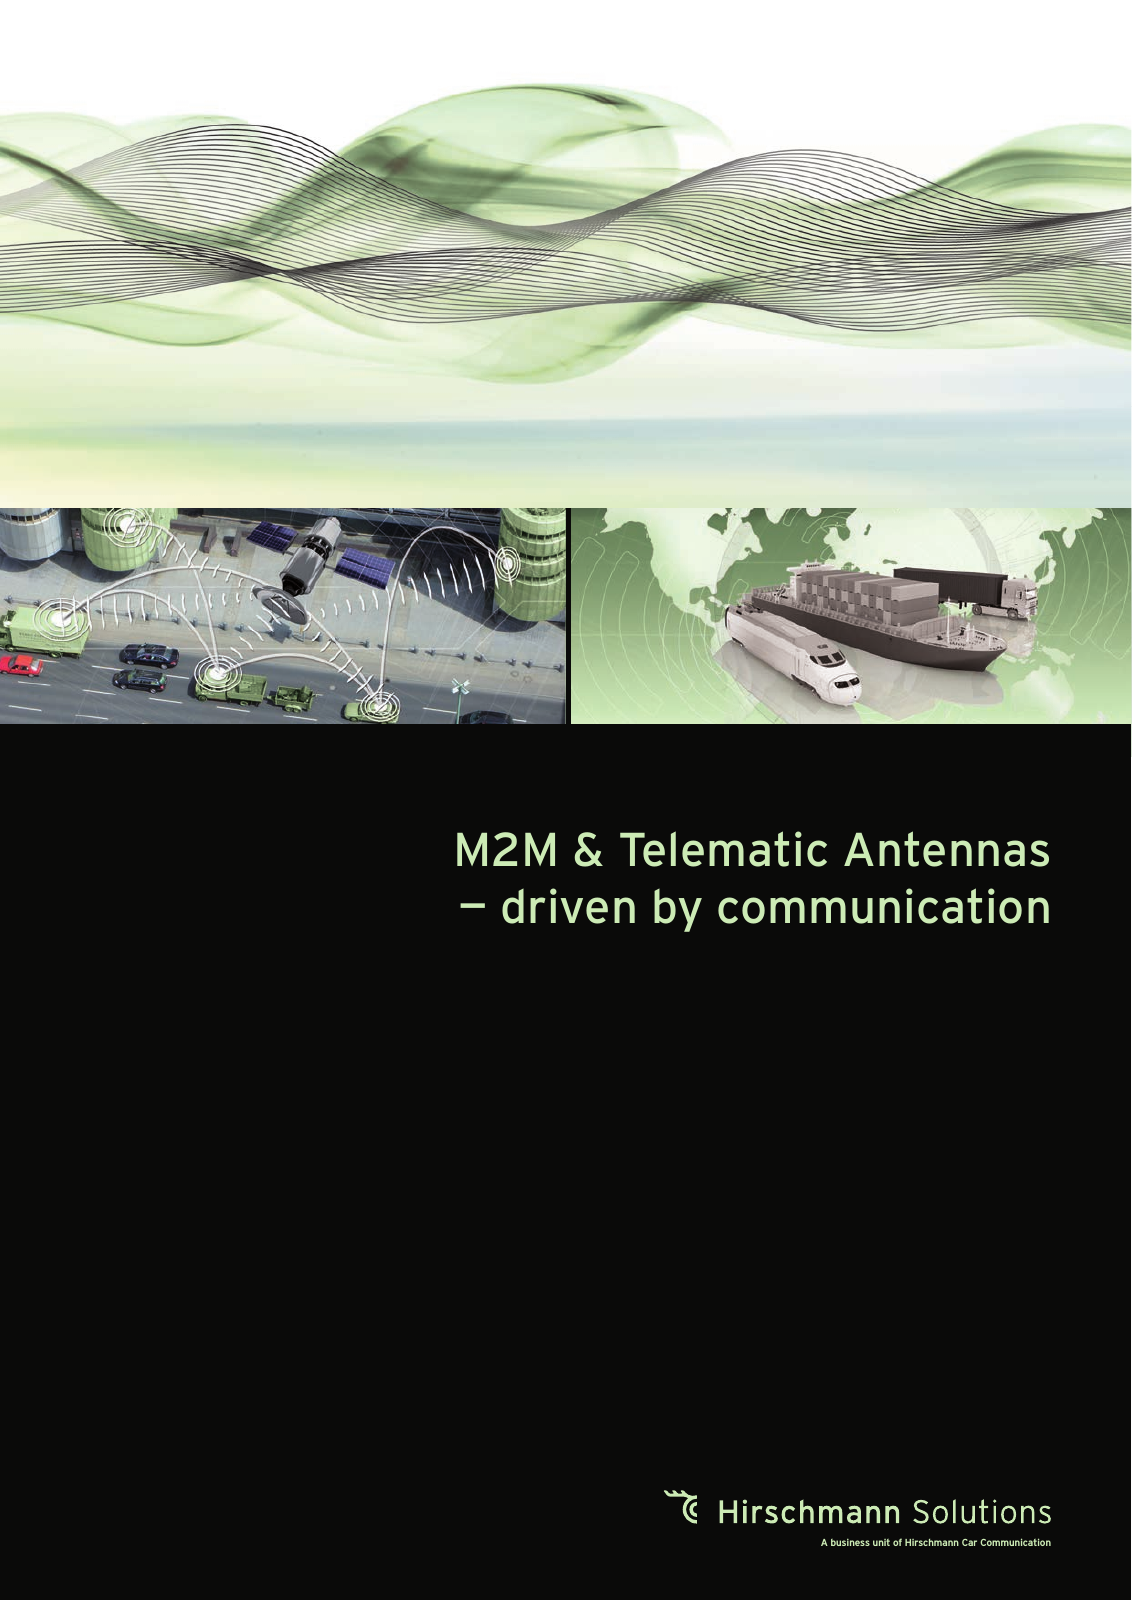 Vorschau Produktkatalog M2M & Telematic Antennas Nov. '16 Seite 1